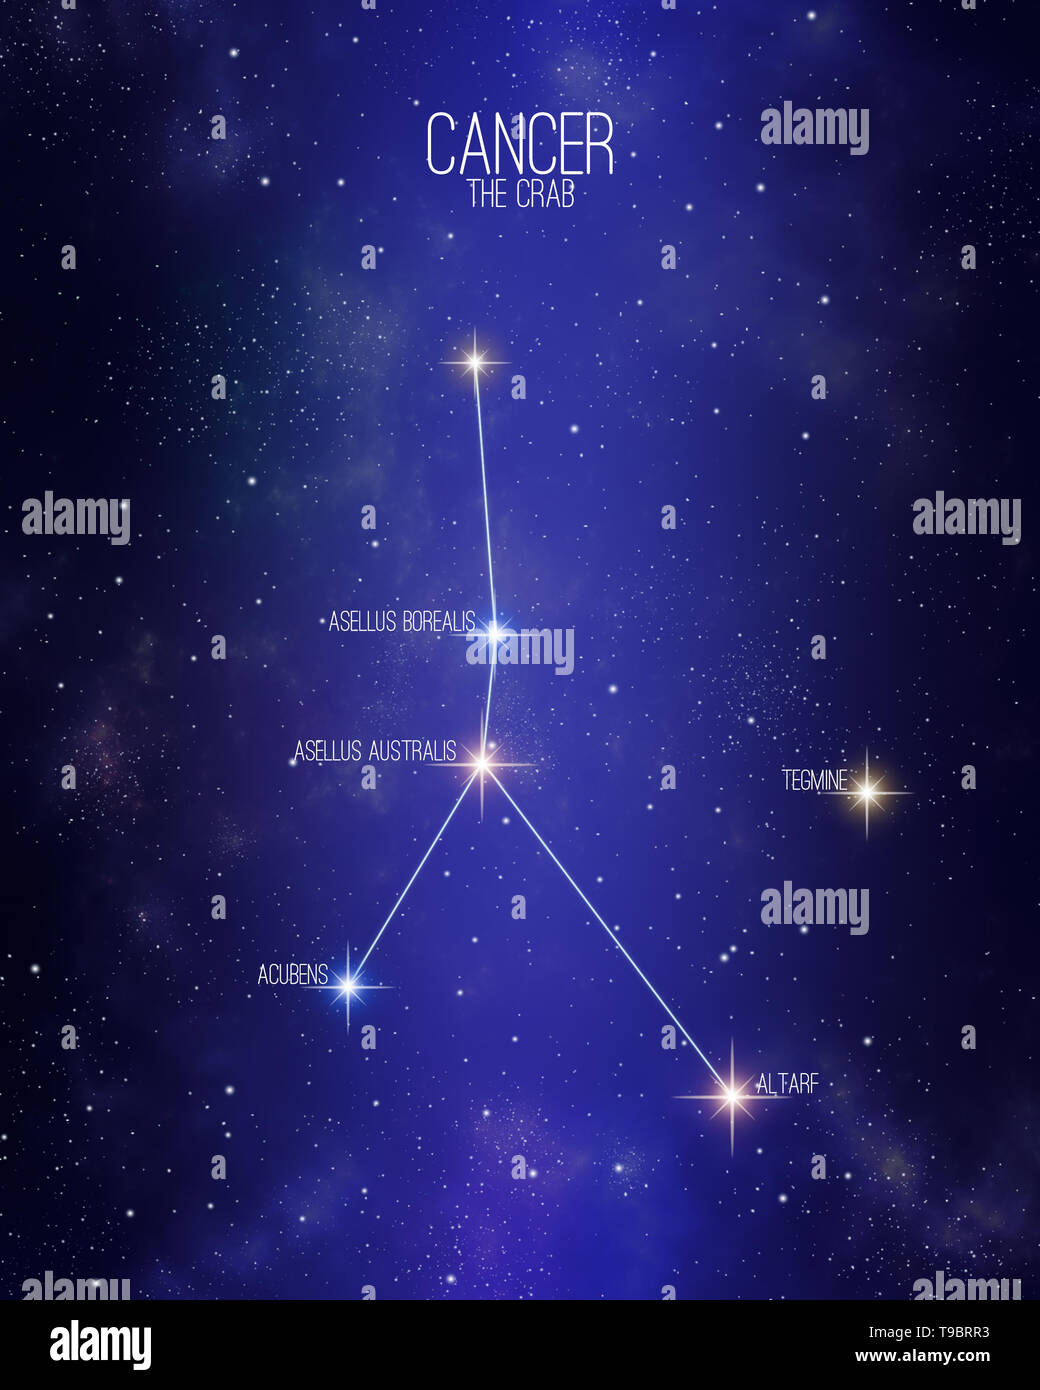 Nombre de las estrellas del universo fotografías e imágenes de alta  resolución - Página 2 - Alamy